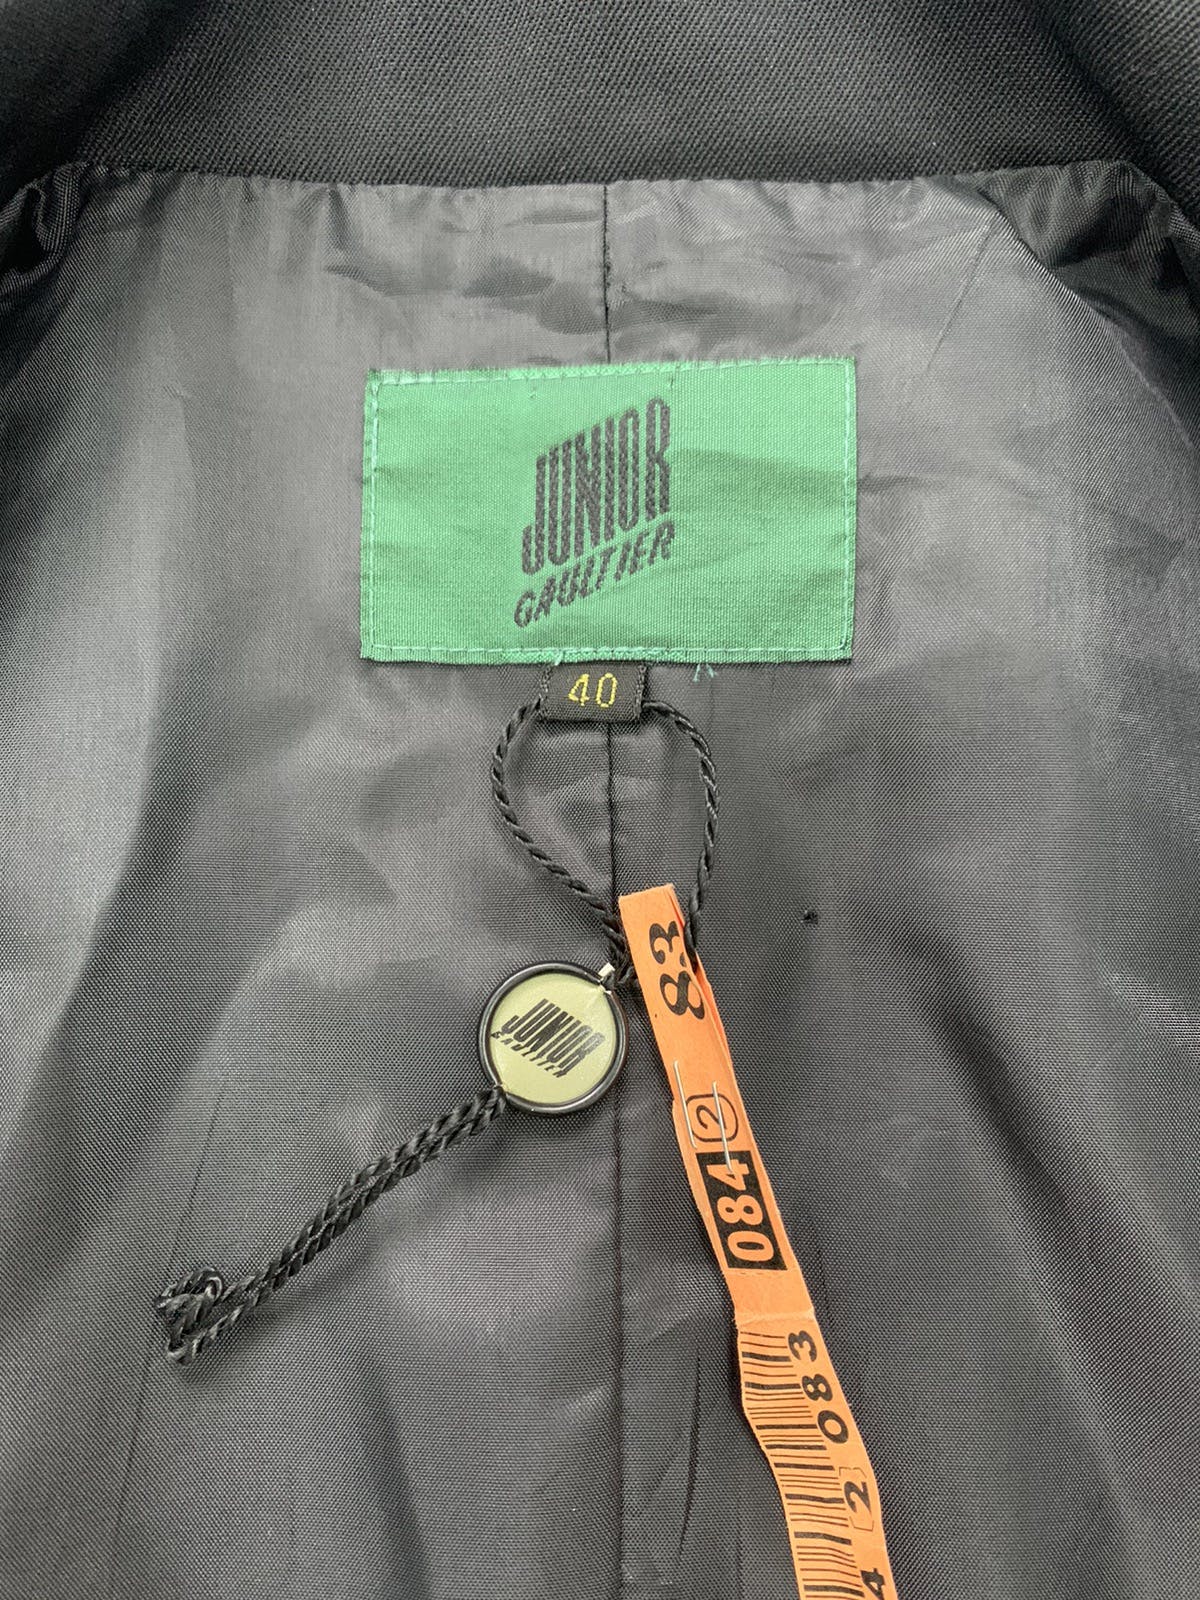 Junior Gaultier Long Coat Made in Japan - 10